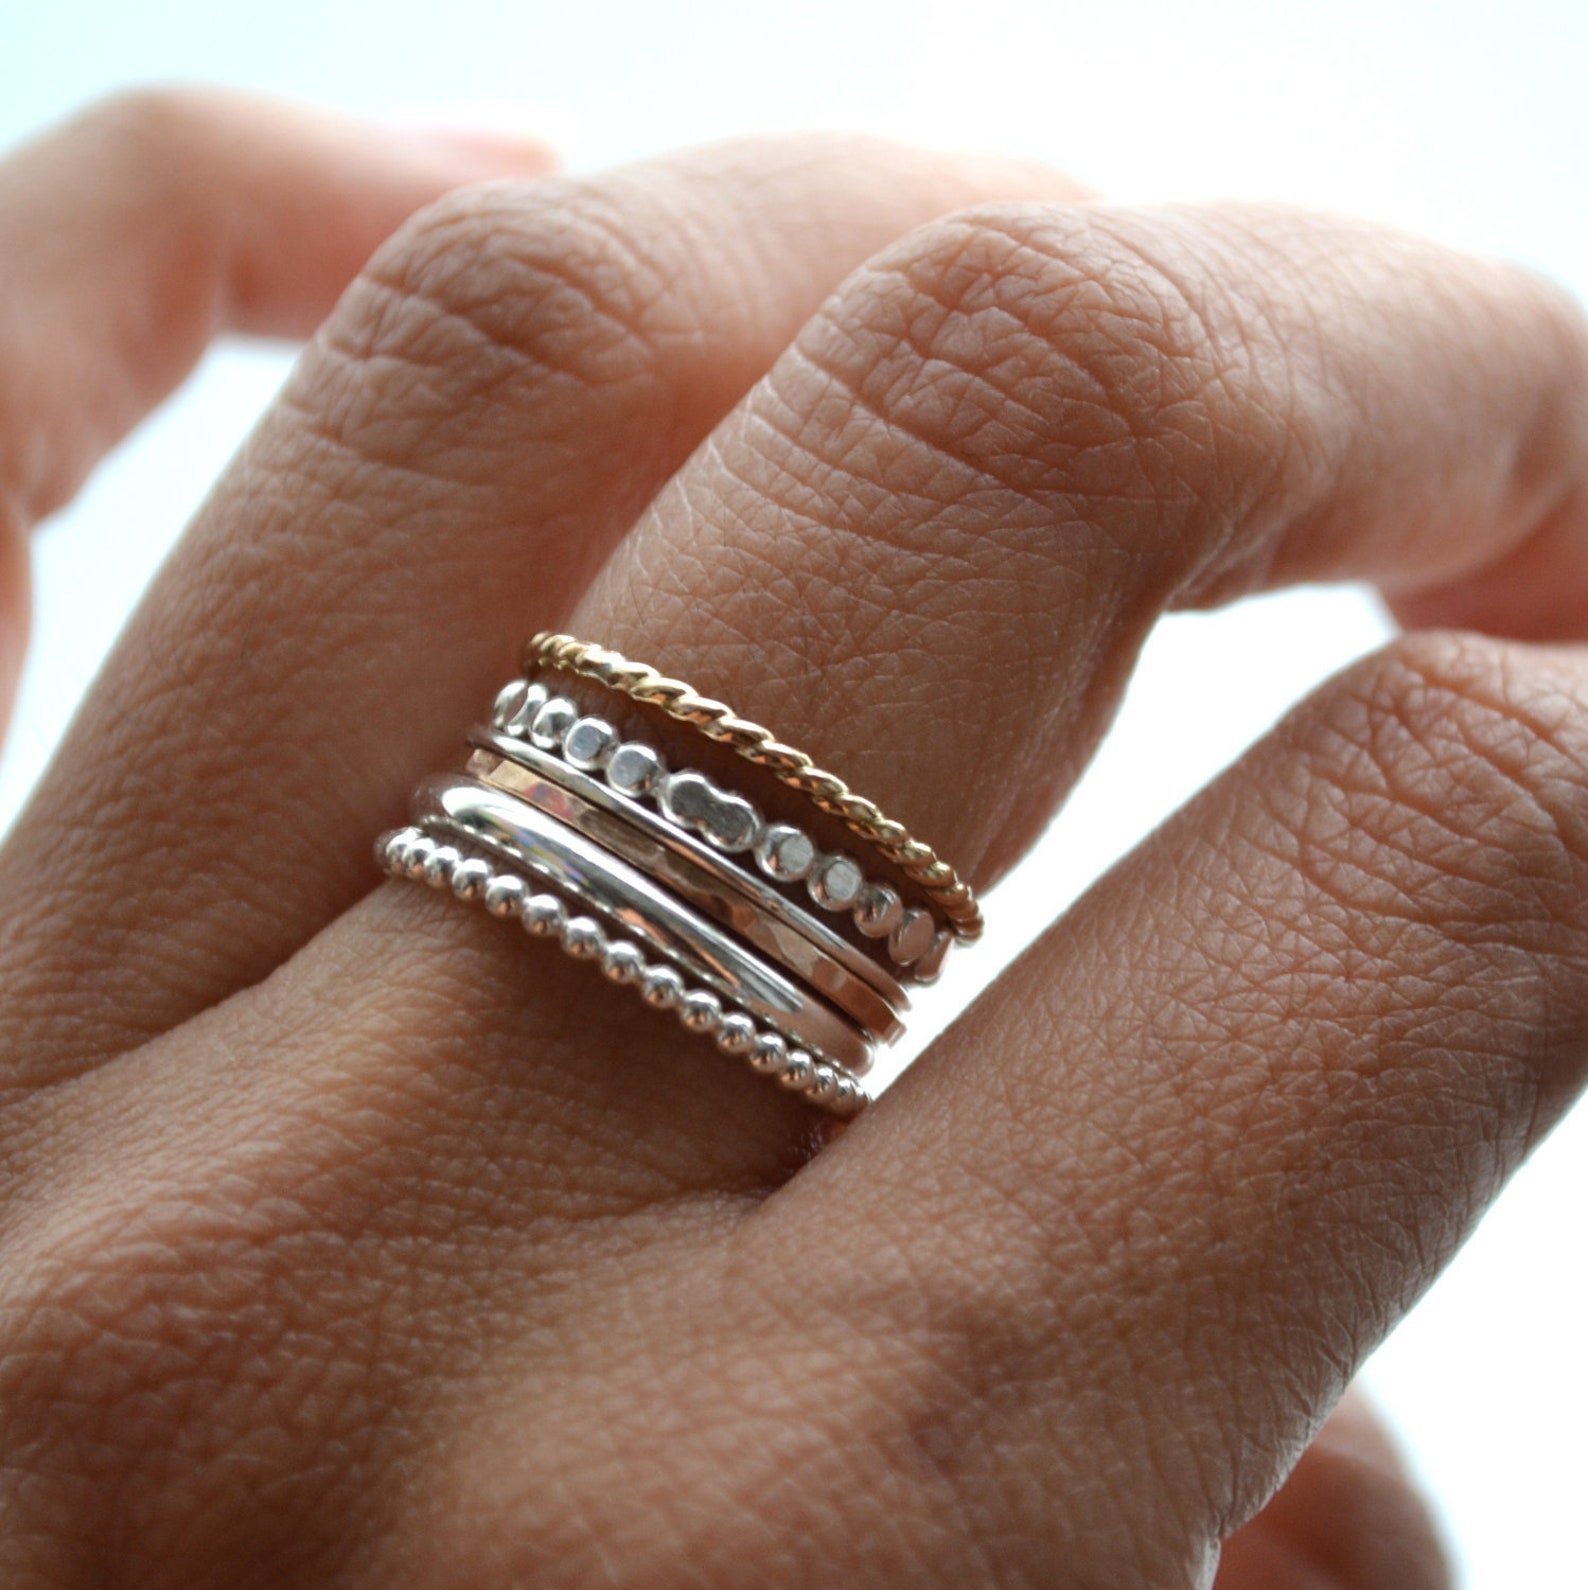 И золото и серебро 6. Сочетание золота и серебра кольца. Многослойное кольцо. Золотое и серебряное кольцо вместе. Золотые и серебряные кольца на одной руке.